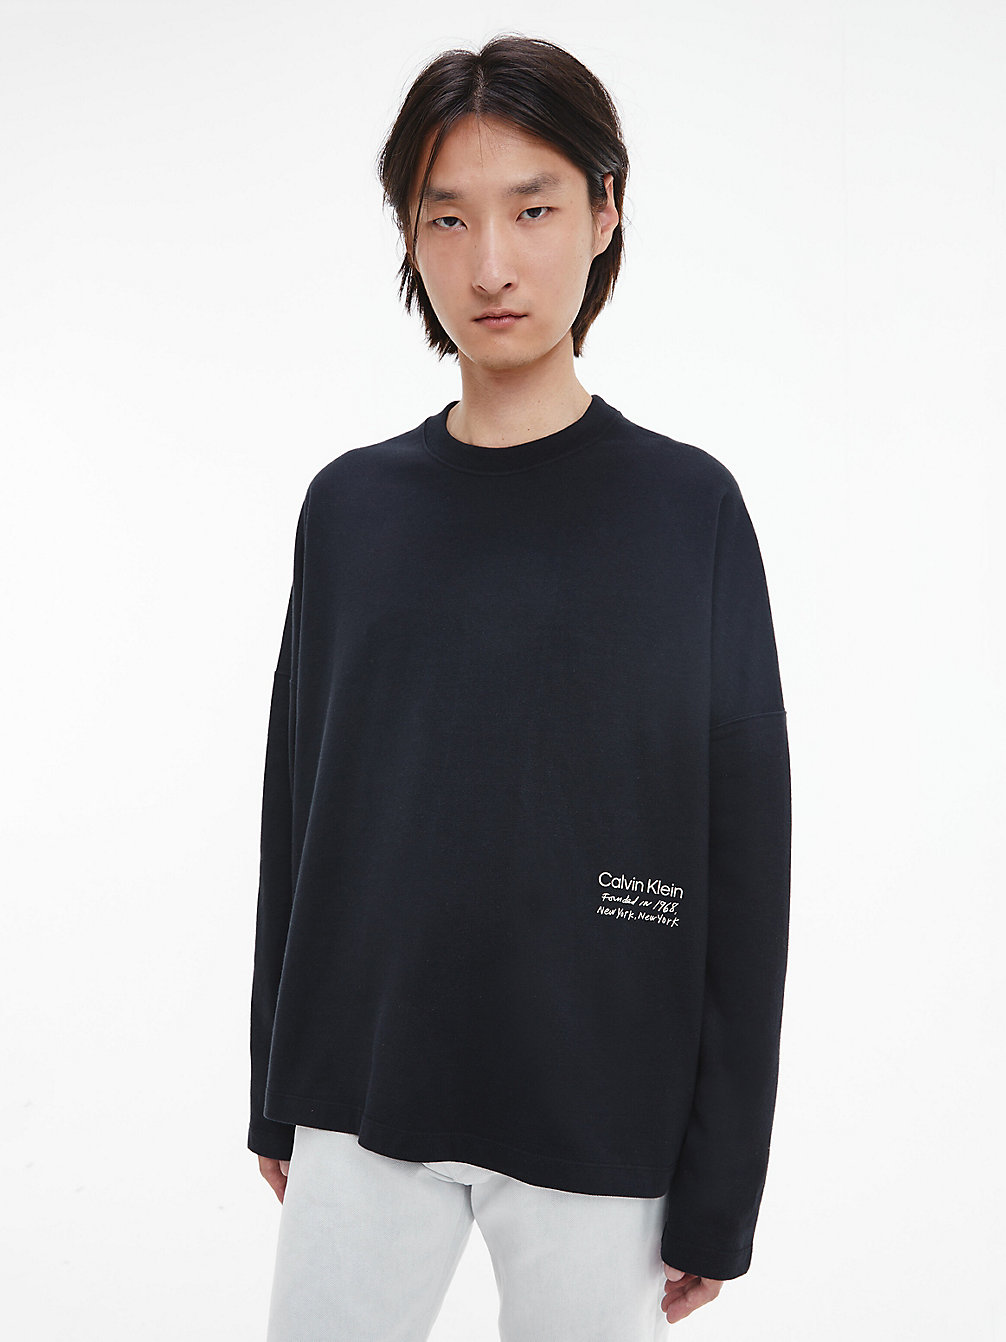 BLACK BEAUTY Unisex-Langarmshirt Mit Print – CK Standards undefined Herren Calvin Klein